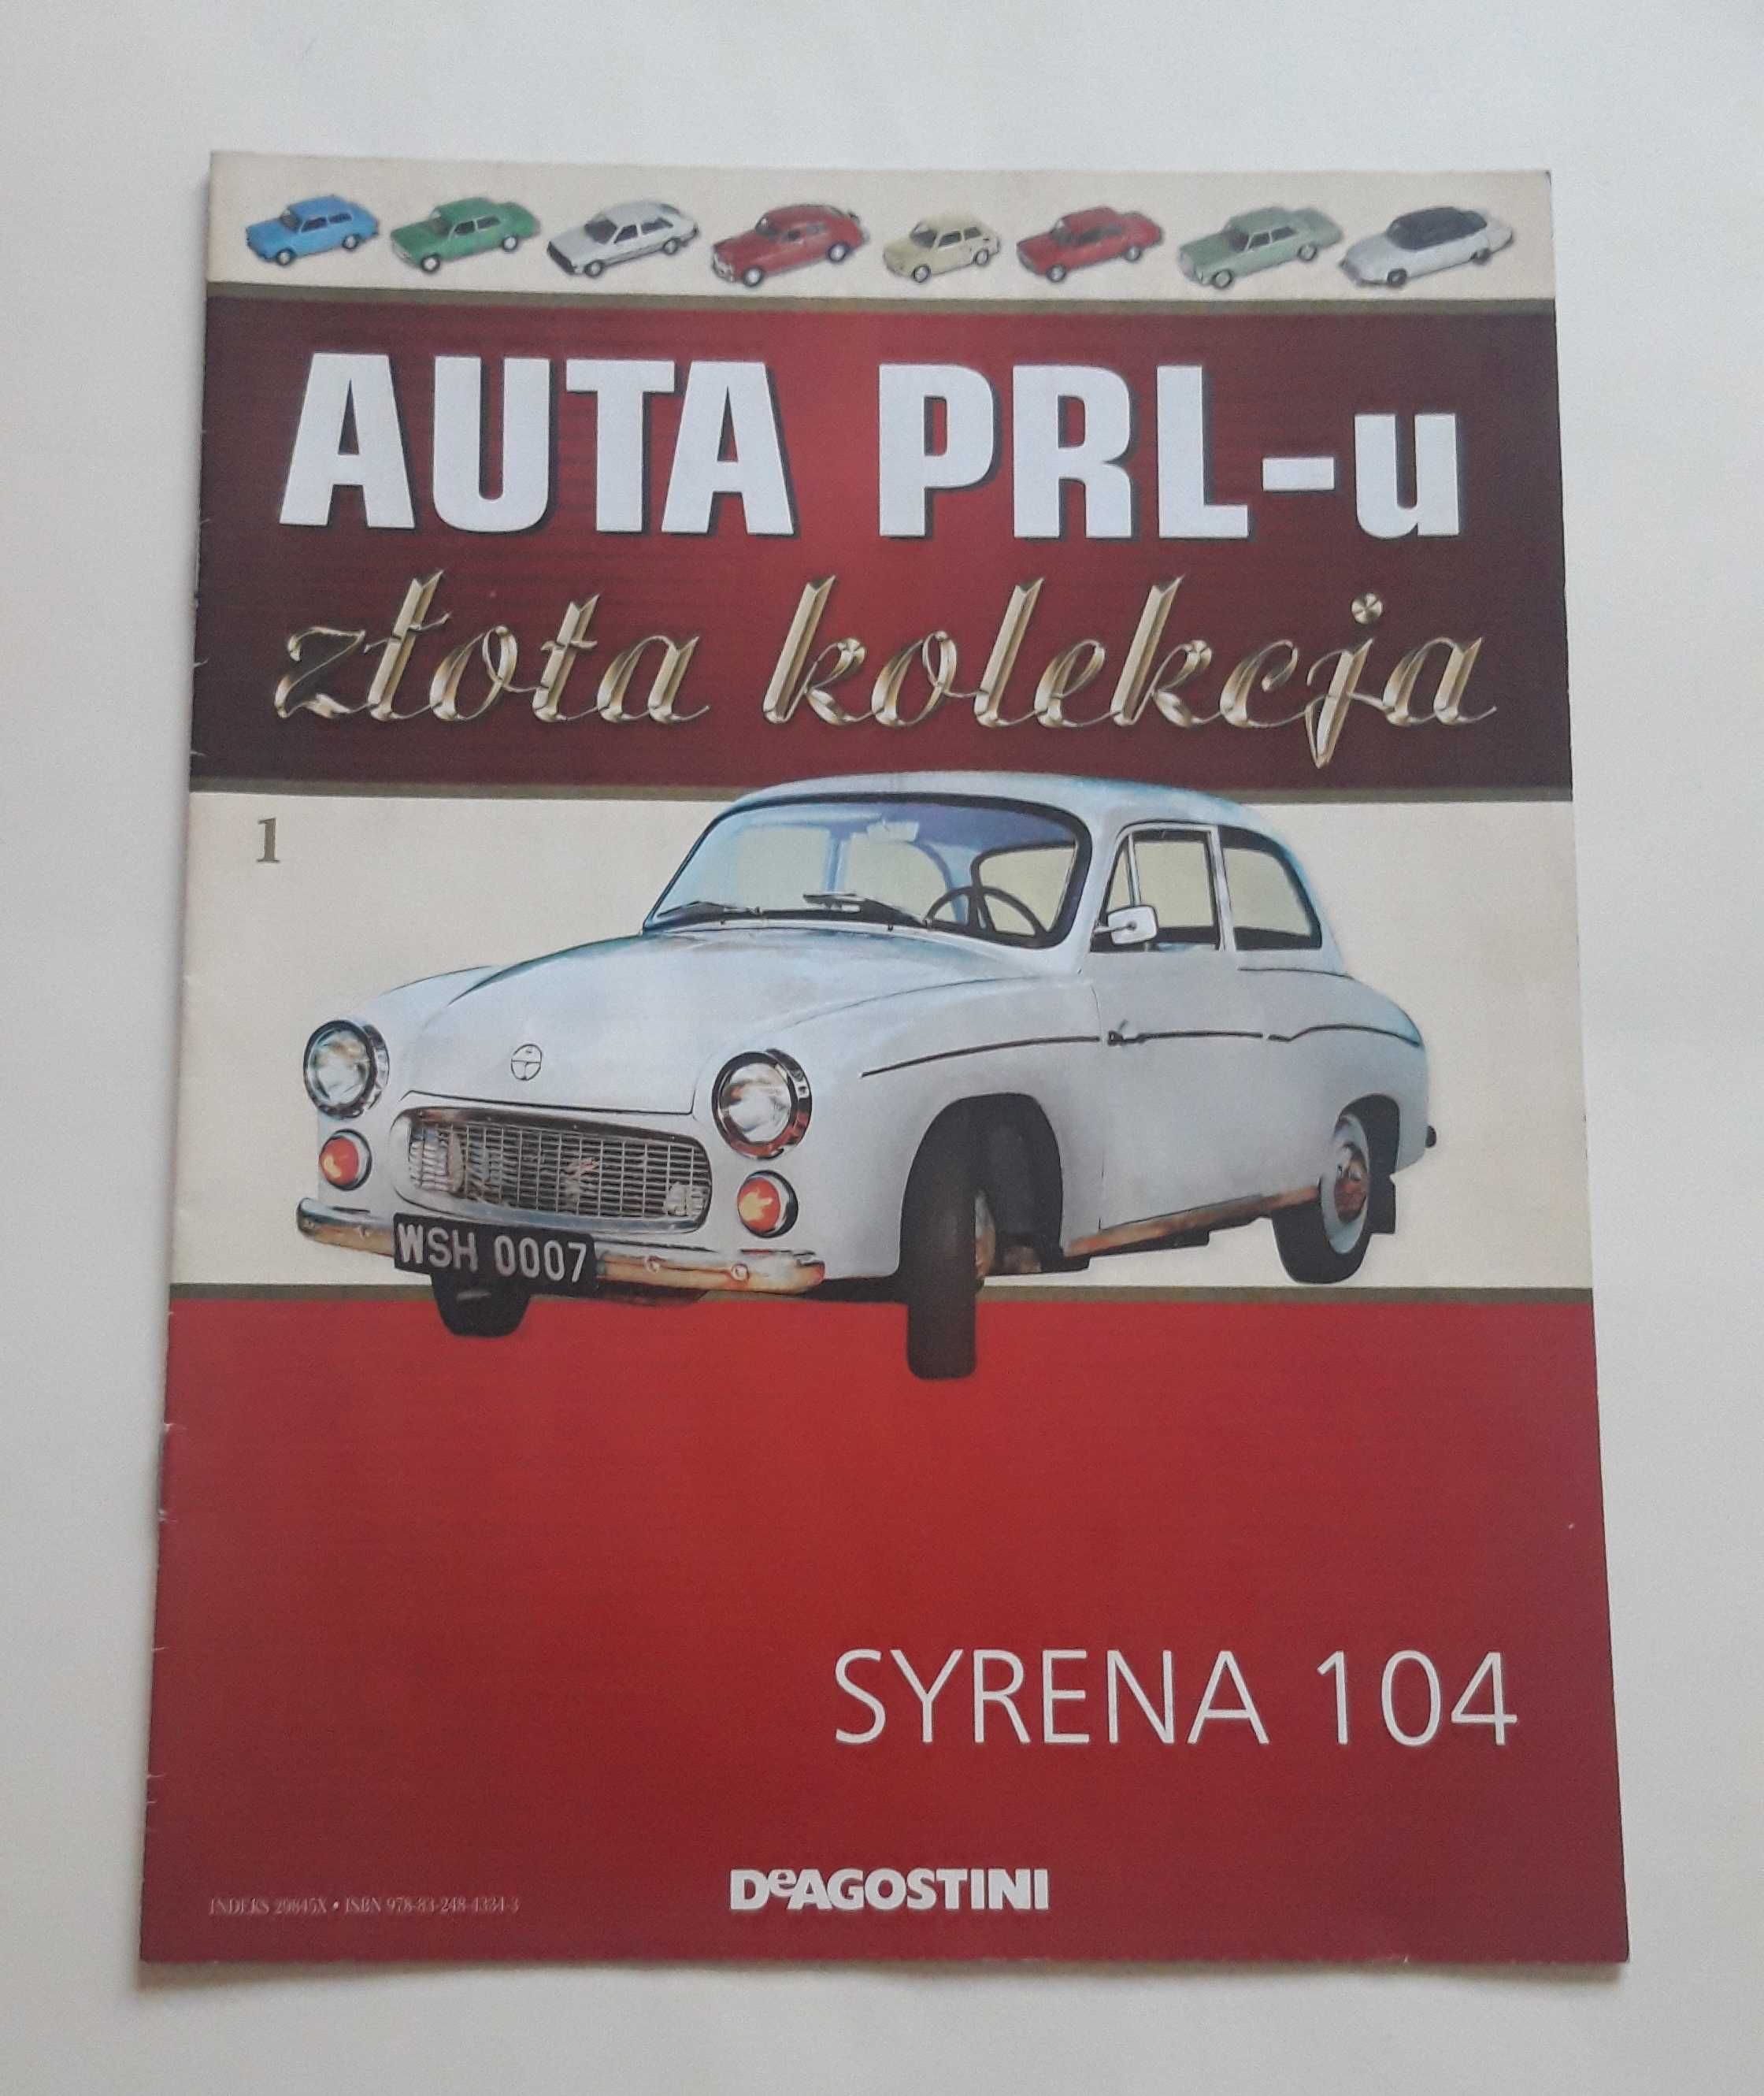 Gazetka Auta PRL-u. Złota kolekcja nr 1 Syrena 104